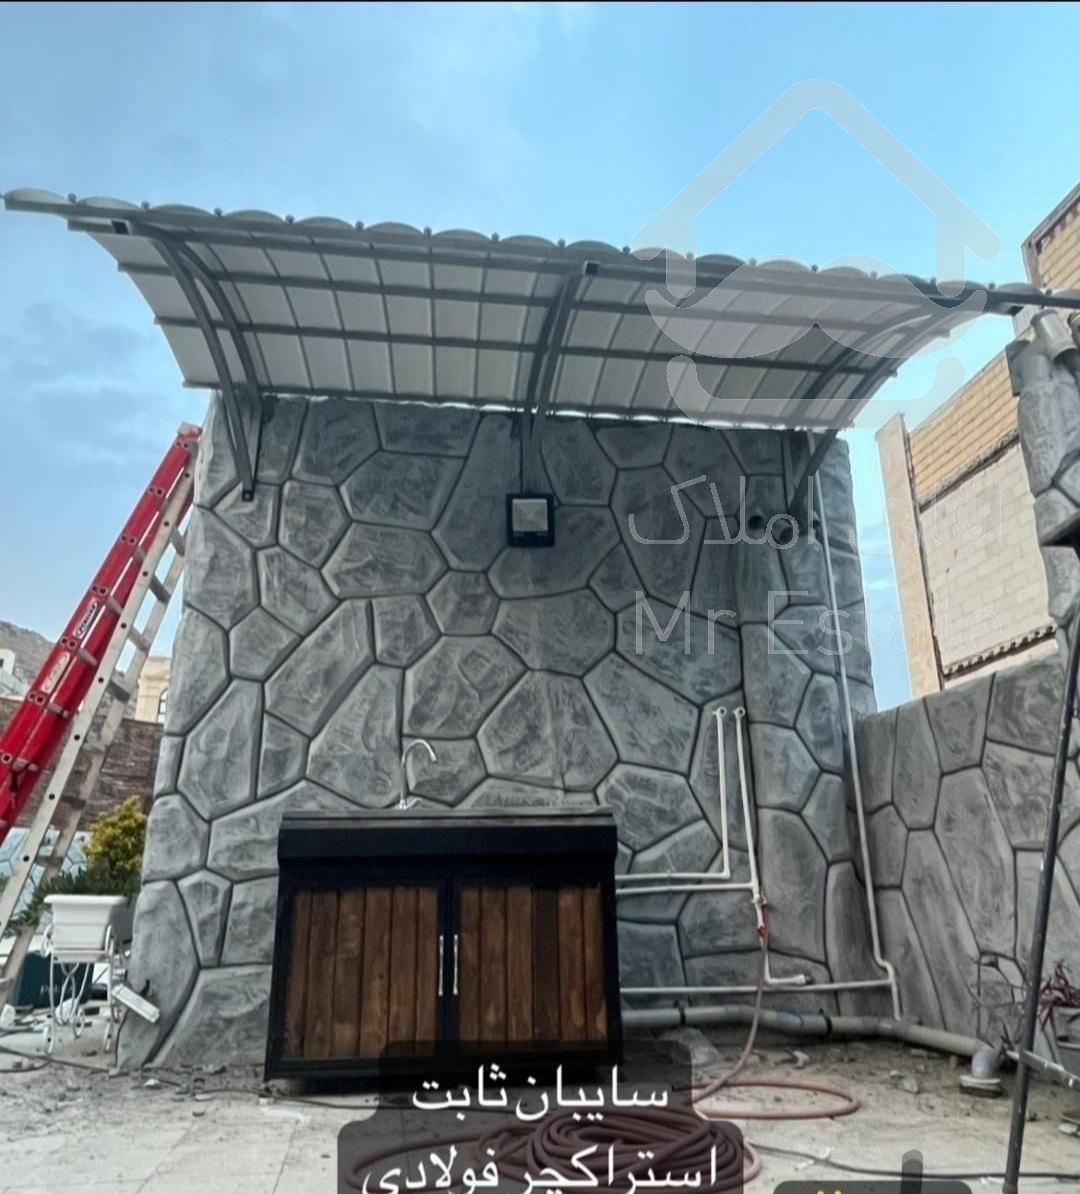 تولیدوطراحی واجرای سقف وسایبان متحرک وثابت در مشهد